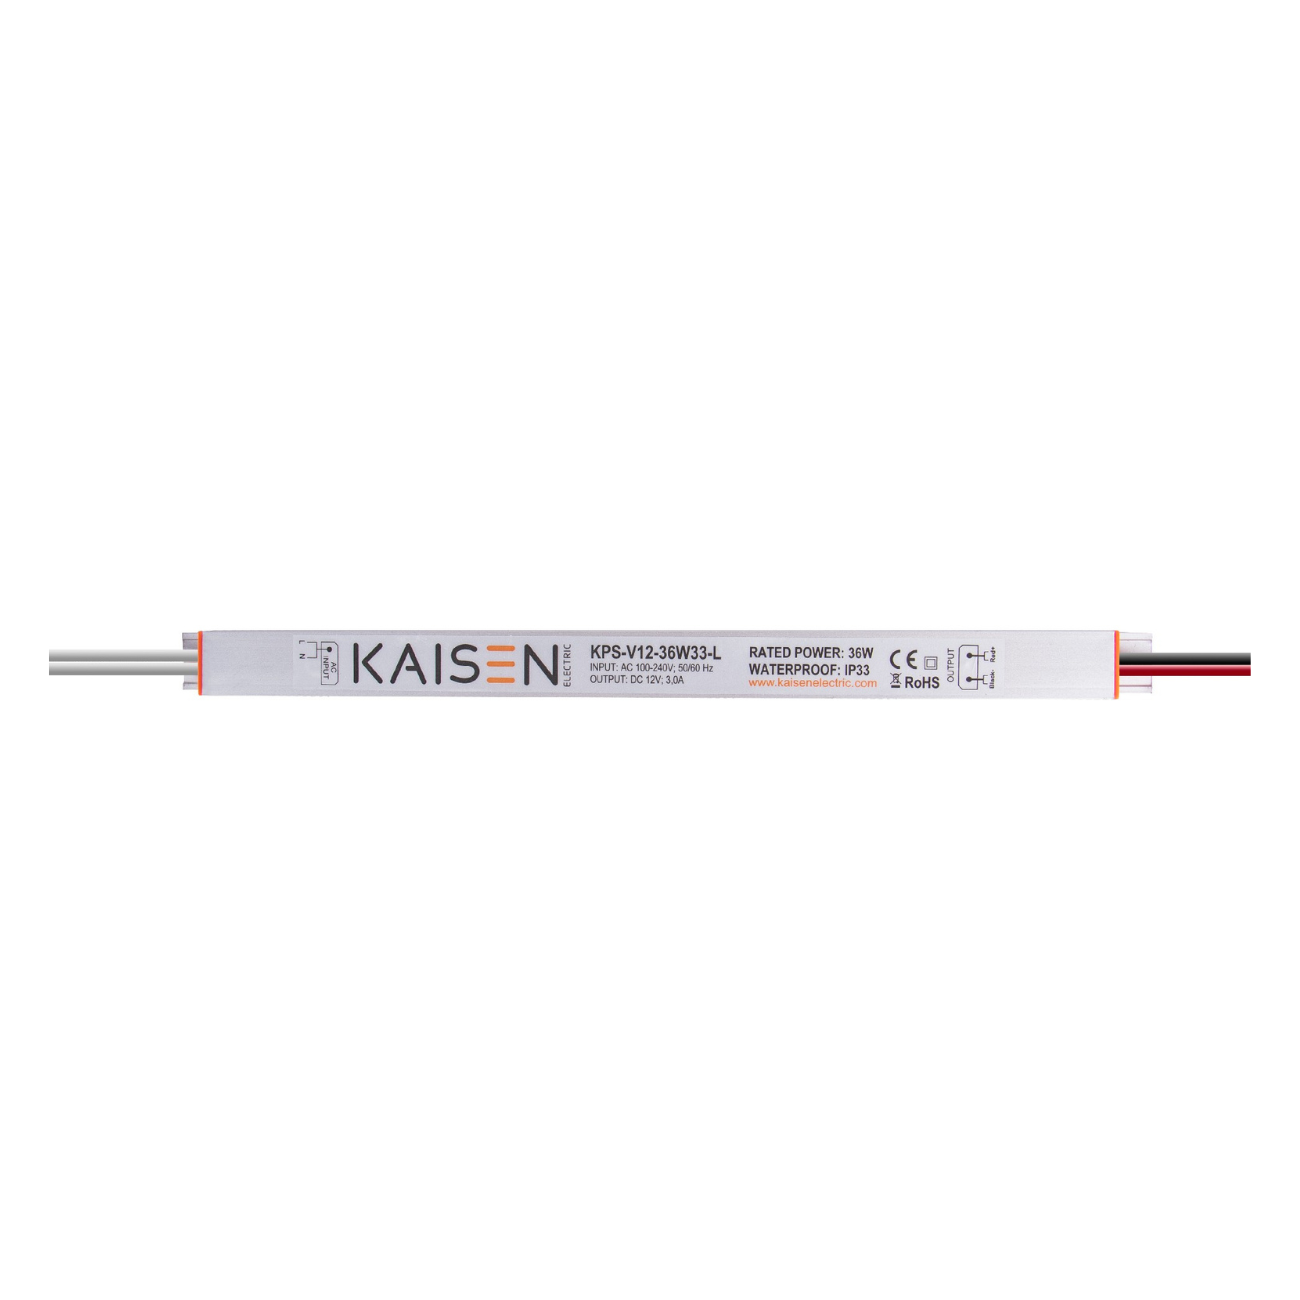 KAISEN KPS-V12-36W33-L (36W/12V) LED-Netzteil. Schutzart IP33 für LED-Lichtwerbung bzw. Signage im Innenbereich